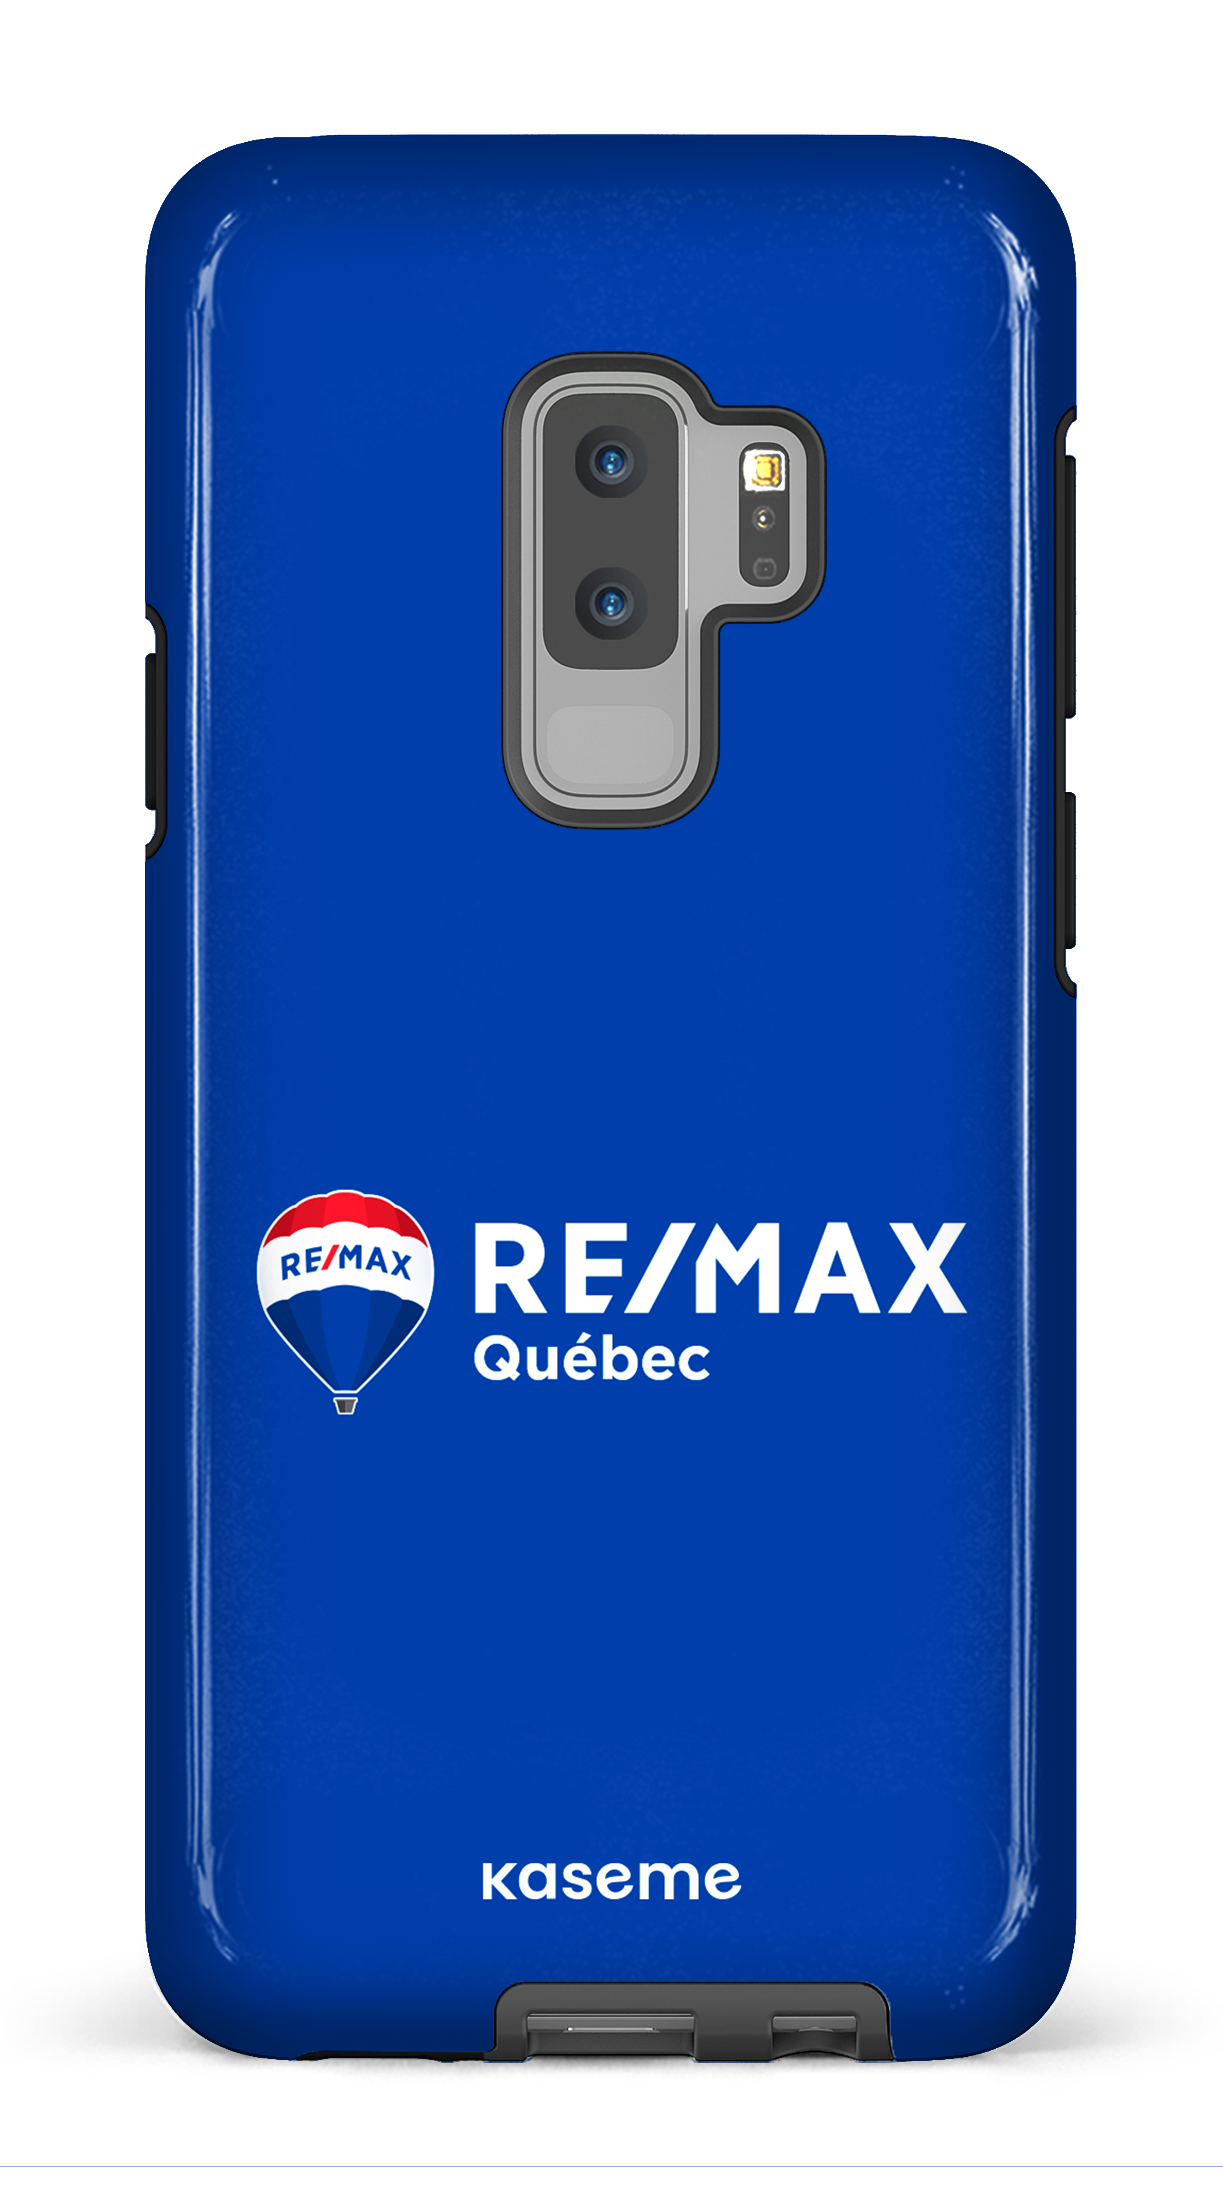 Remax Québec Bleu - Galaxy S9 Plus